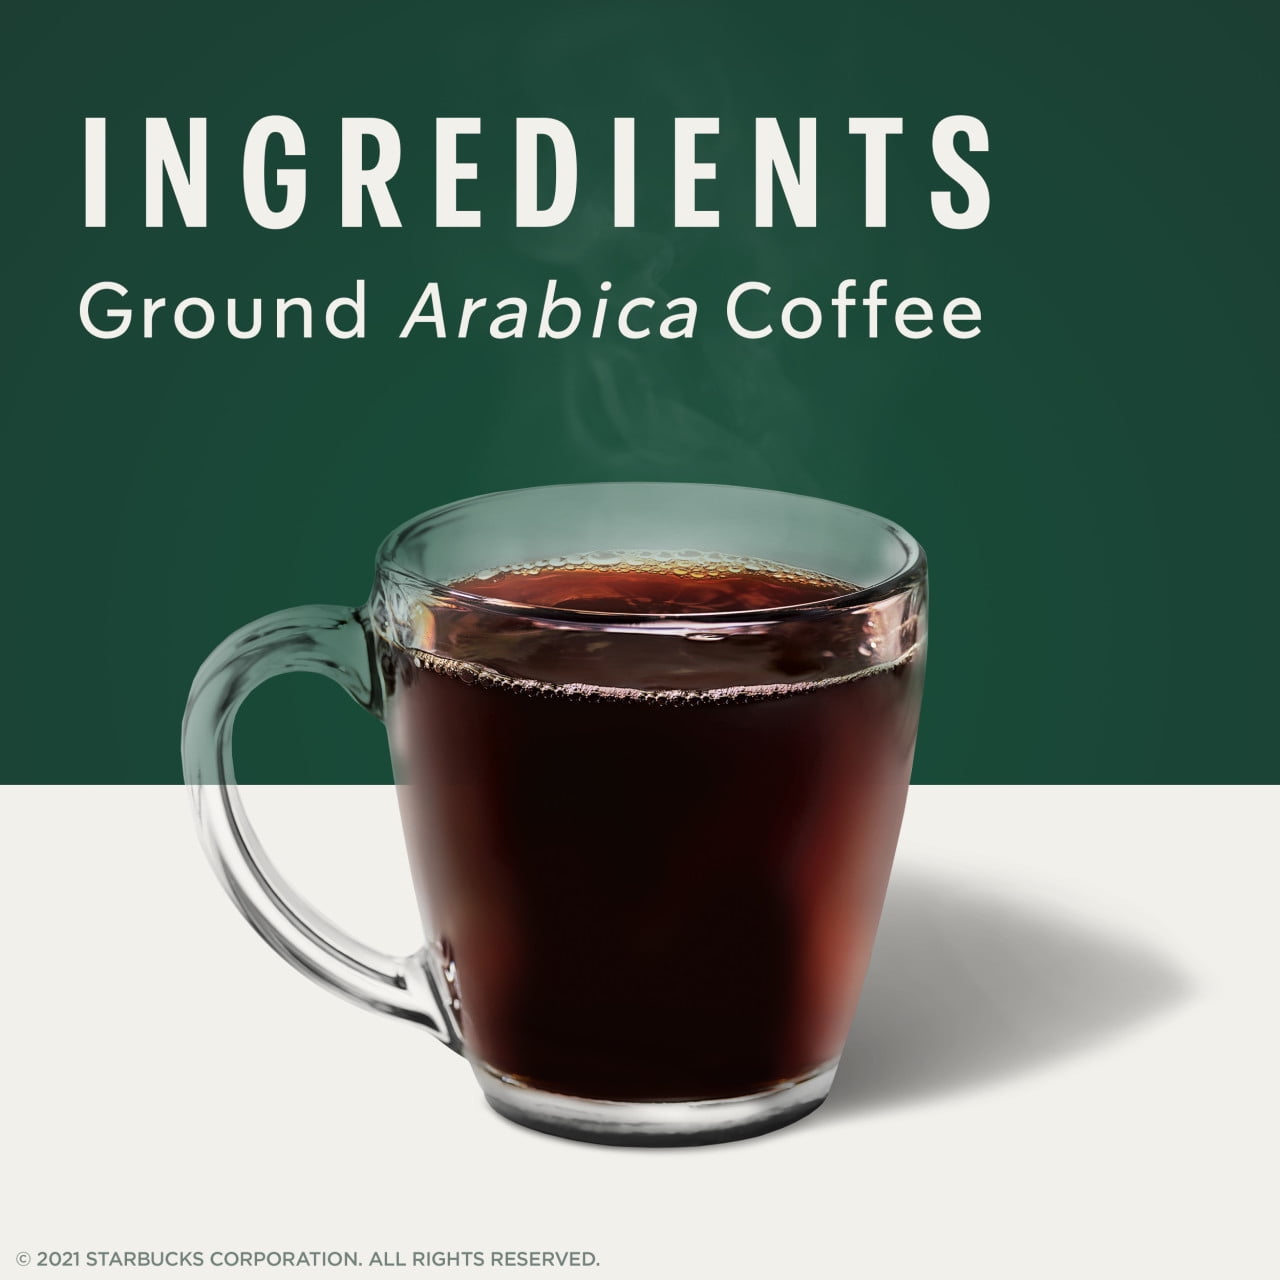 Café en grain Espresso Roast Starbucks